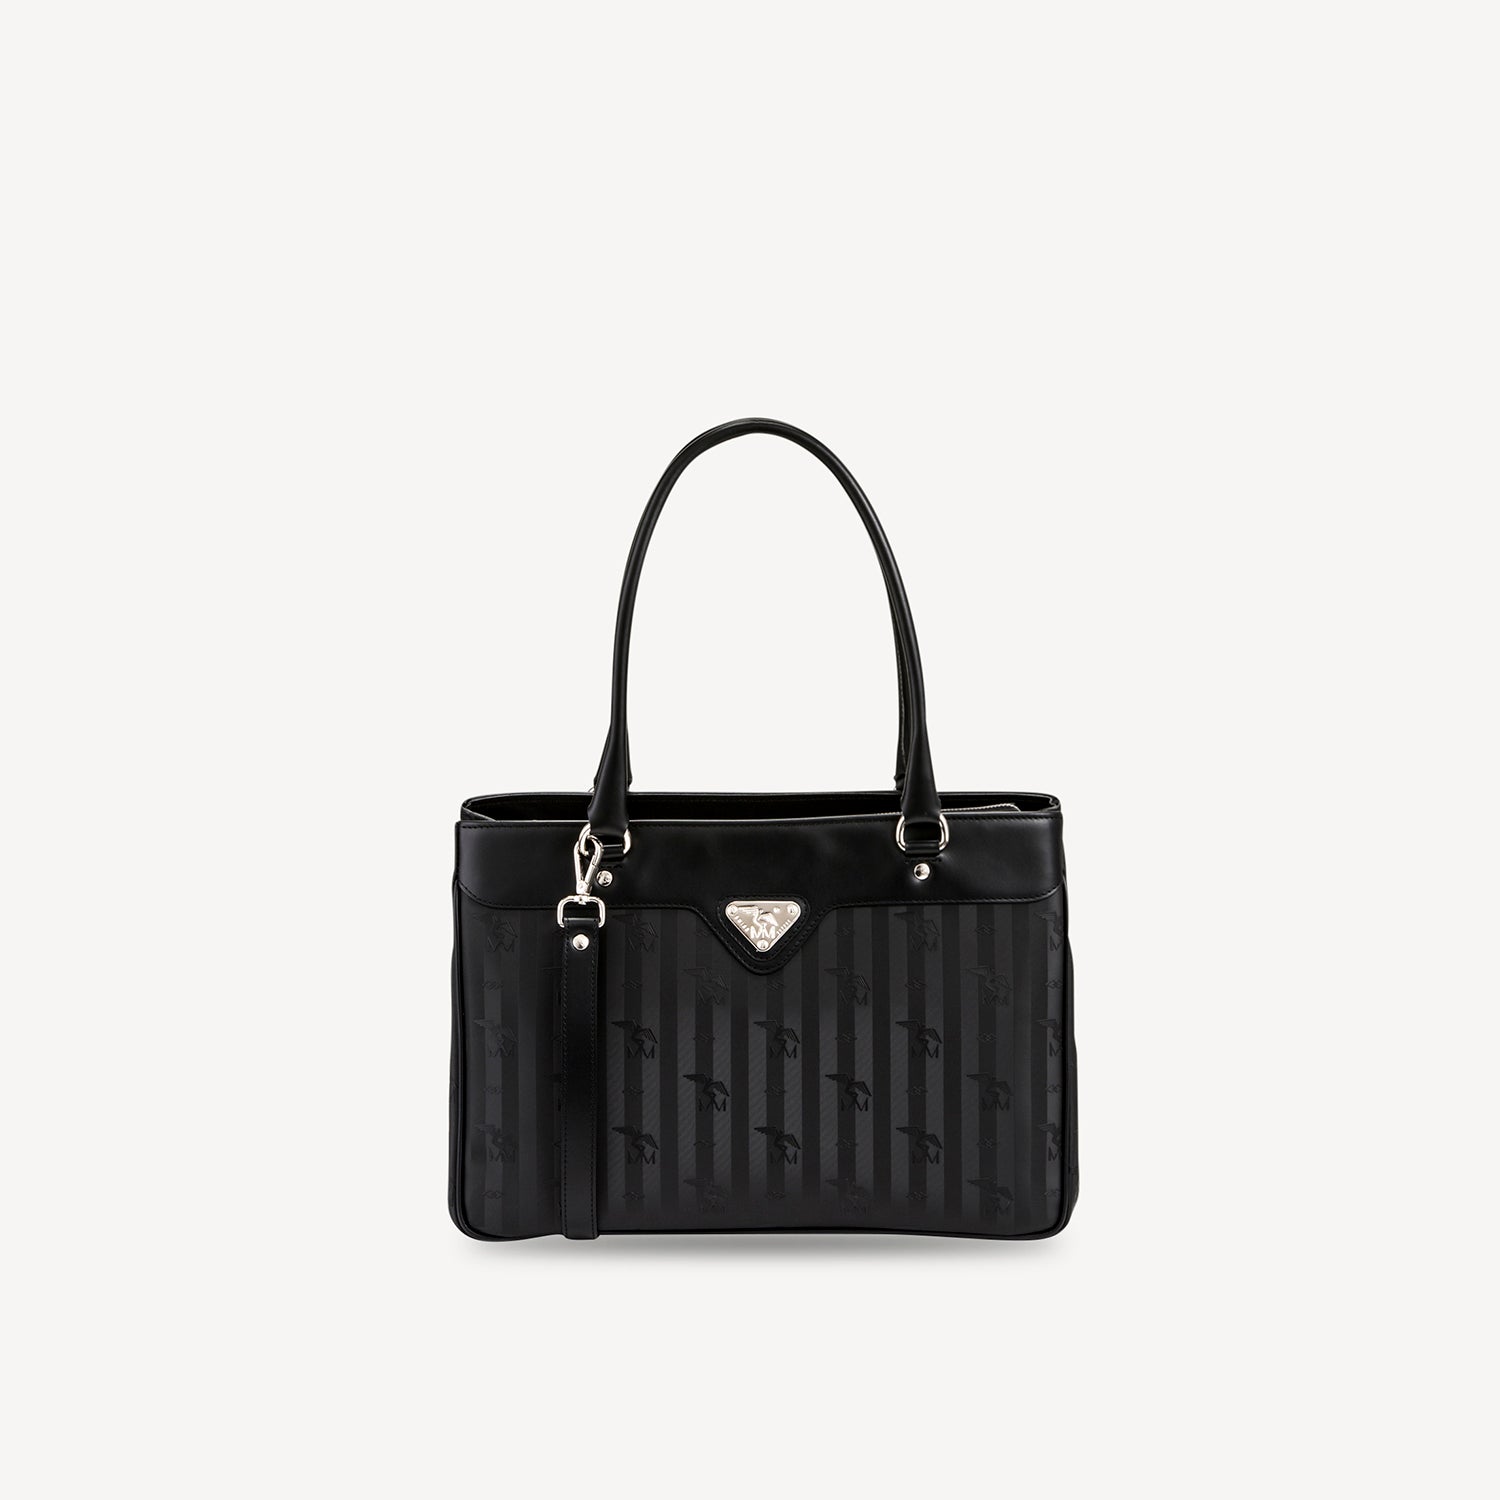 SULZ | Handbag black/silver